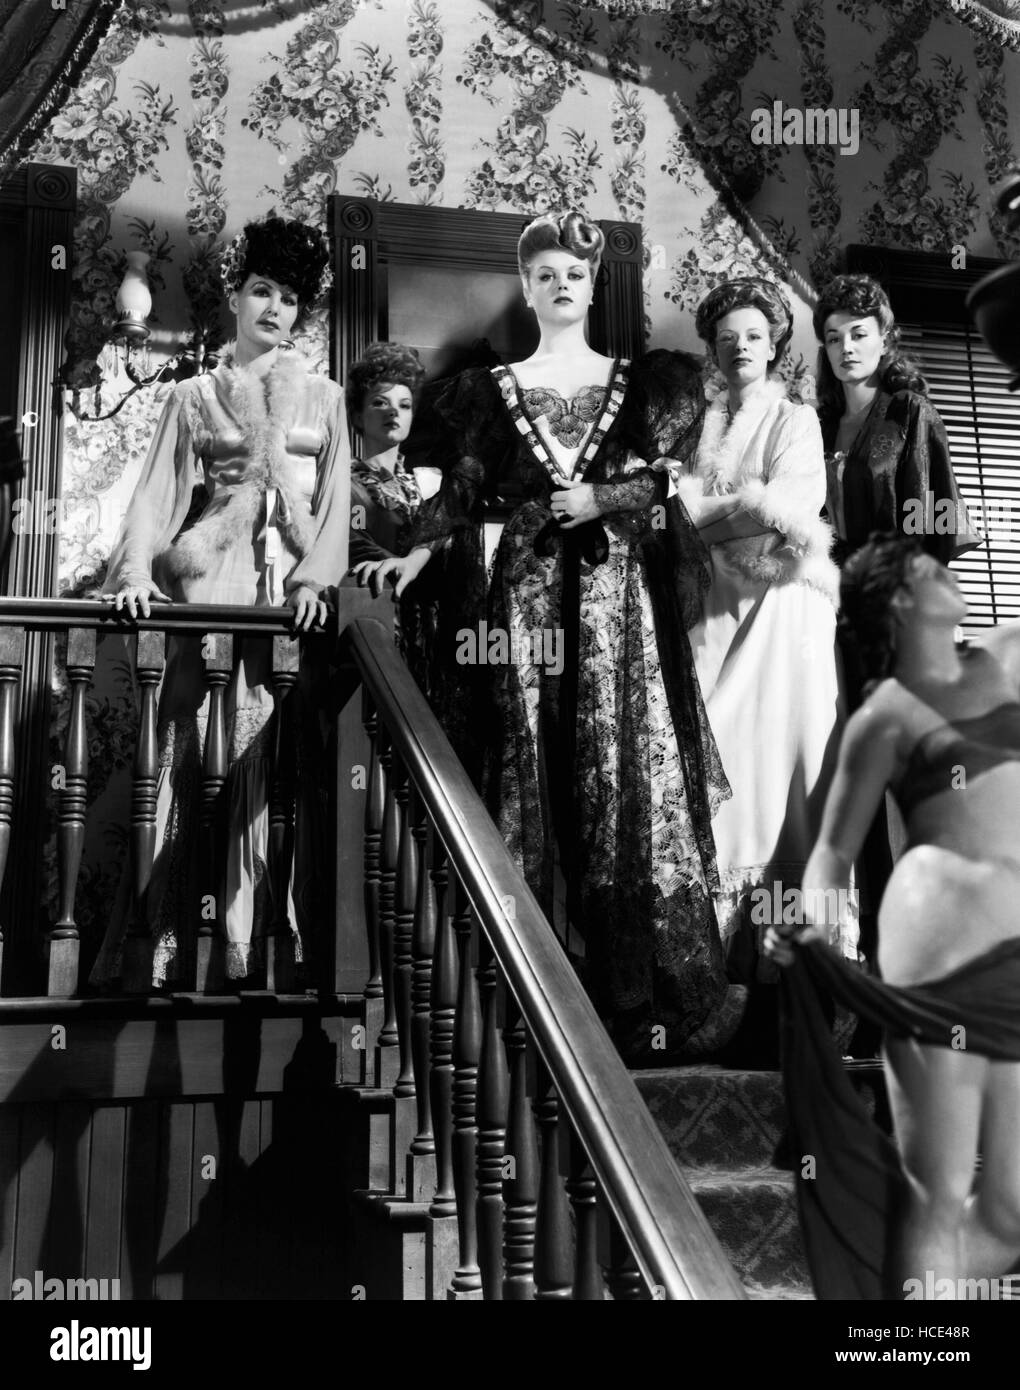 THE HARVEY GIRLS, Angela Lansbury (center), 1946 Stock Photo